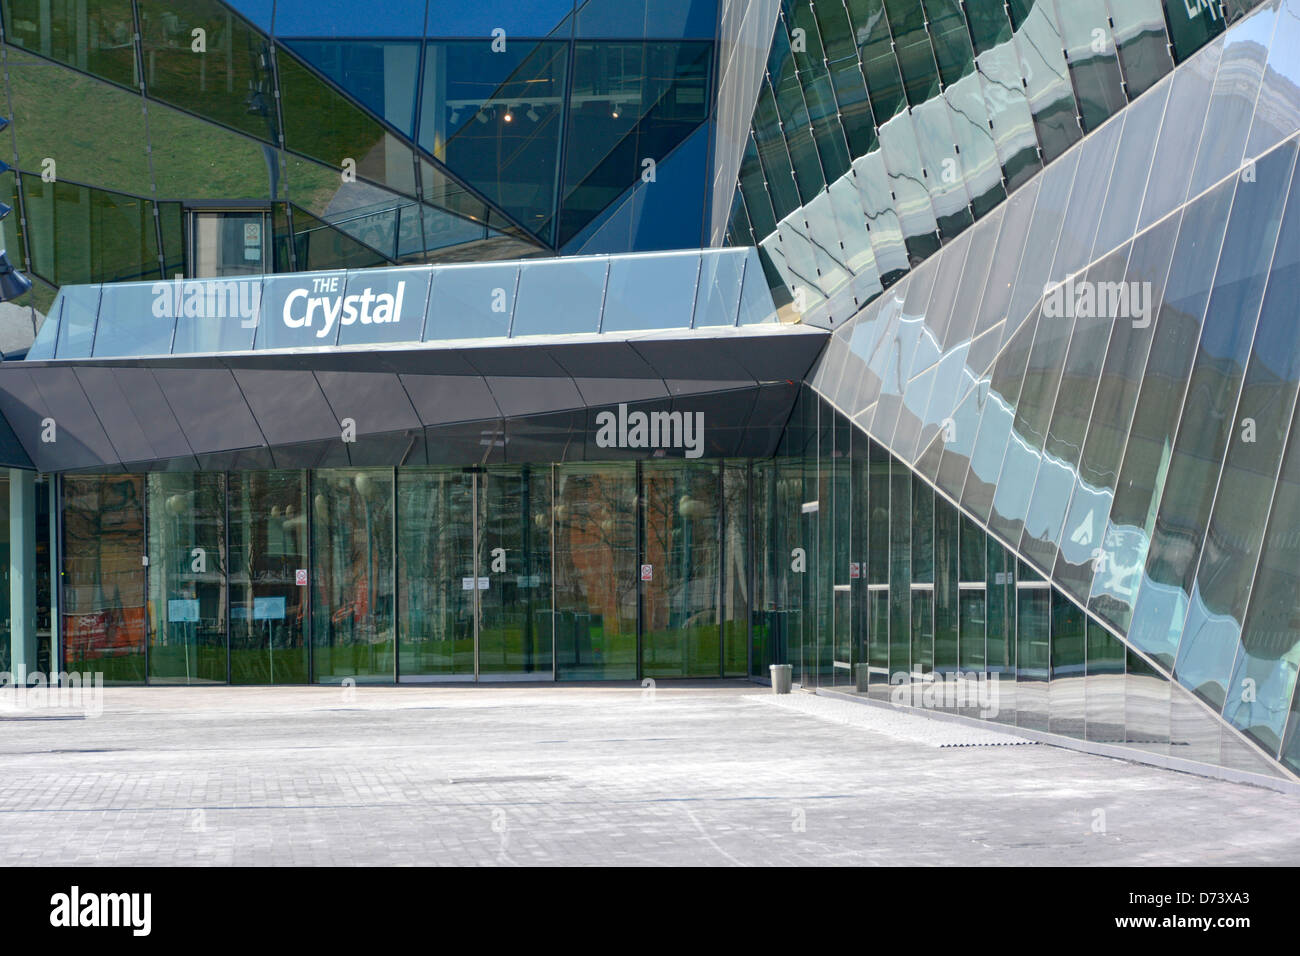 Bâtiment moderne en cristal avec expositions et exposition sur le développement durable de la ville par Siemens Royal Victoria Dock dans l'est de Londres Angleterre Royaume-Uni Banque D'Images